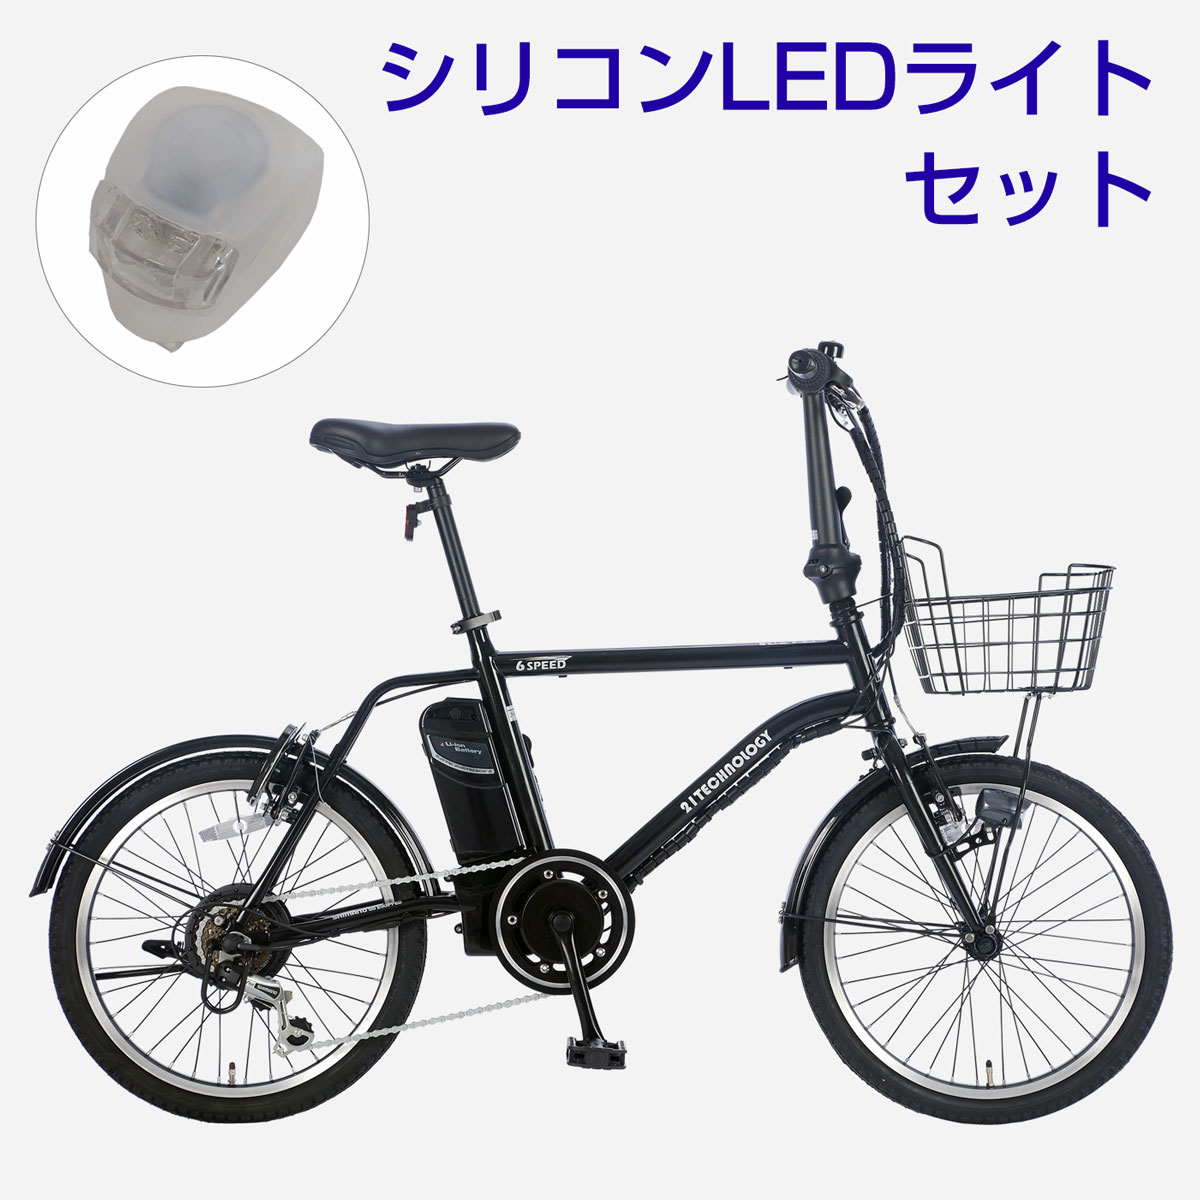 20インチ電動アシスト自転車 DASK206 LEDライトセット